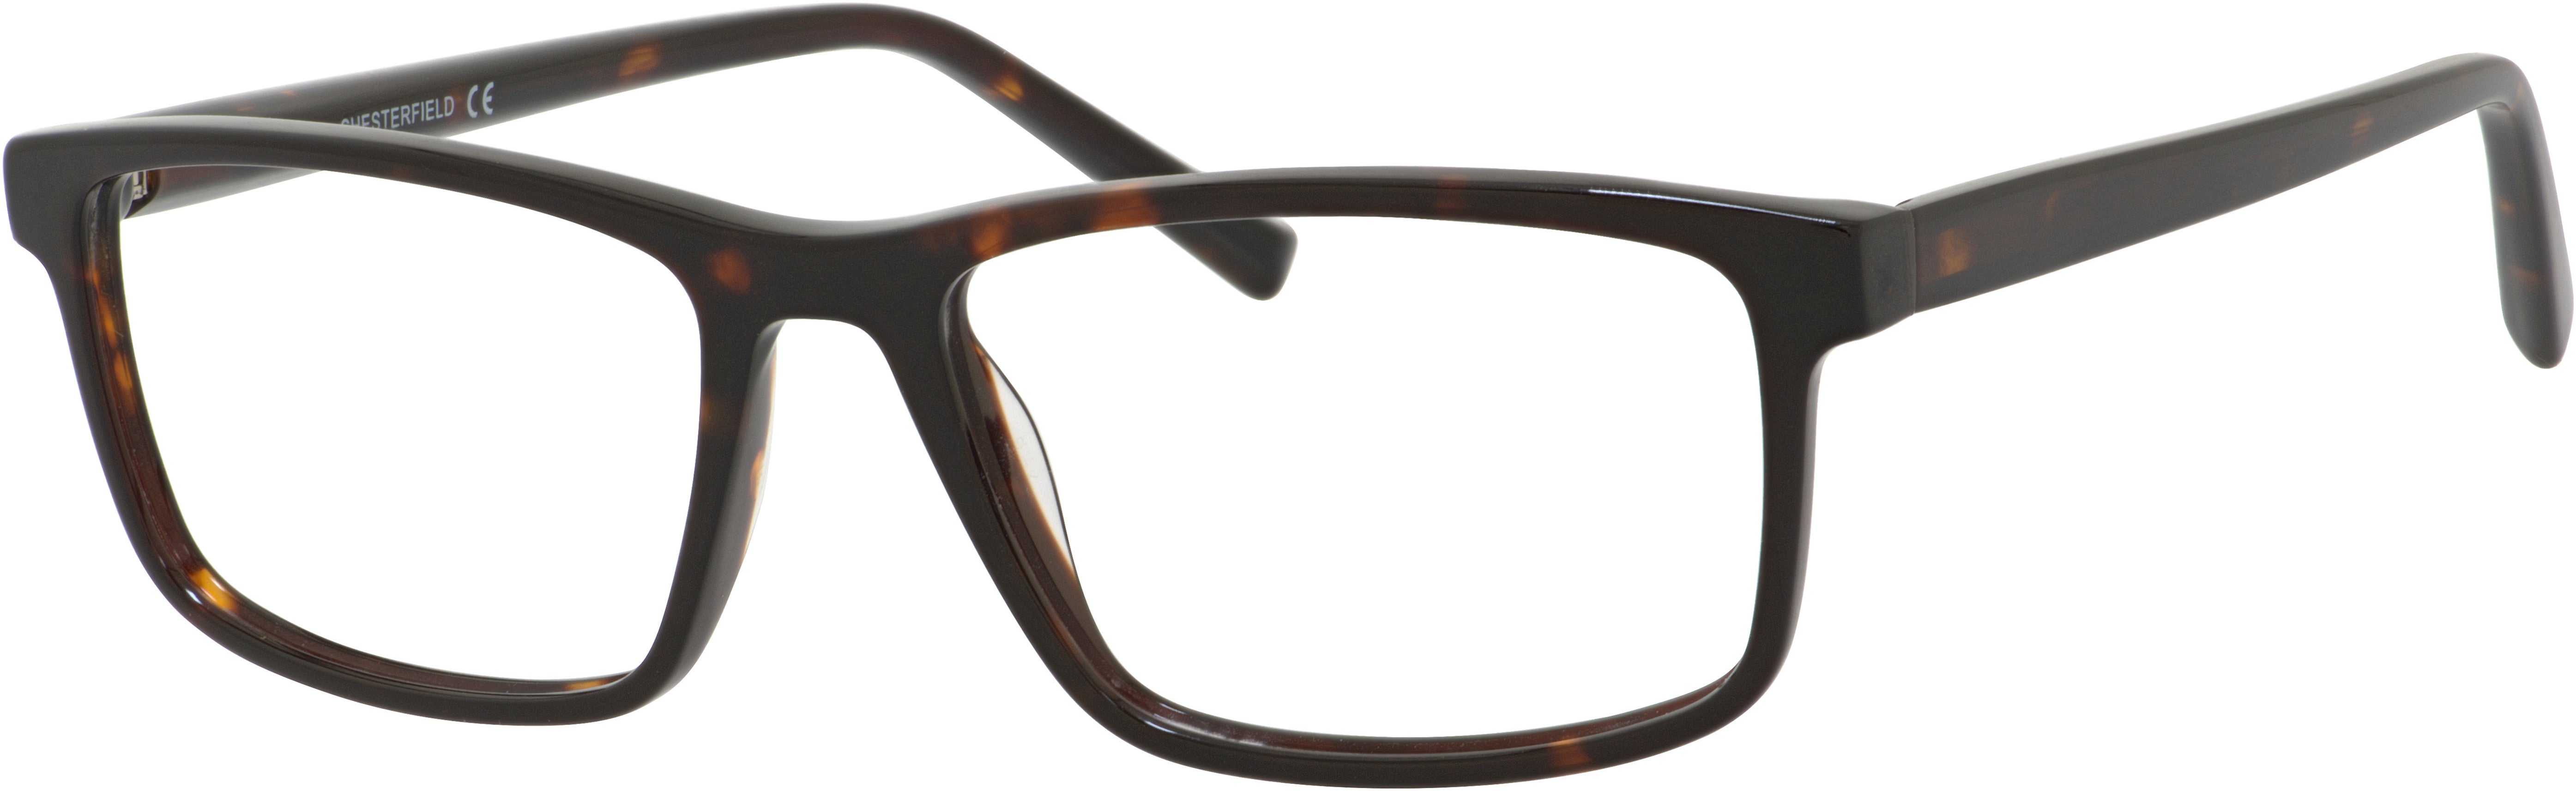  Chesterfield 58XL Rectangular Eyeglasses 0086-0086  Dark Havana (00 Demo Lens)